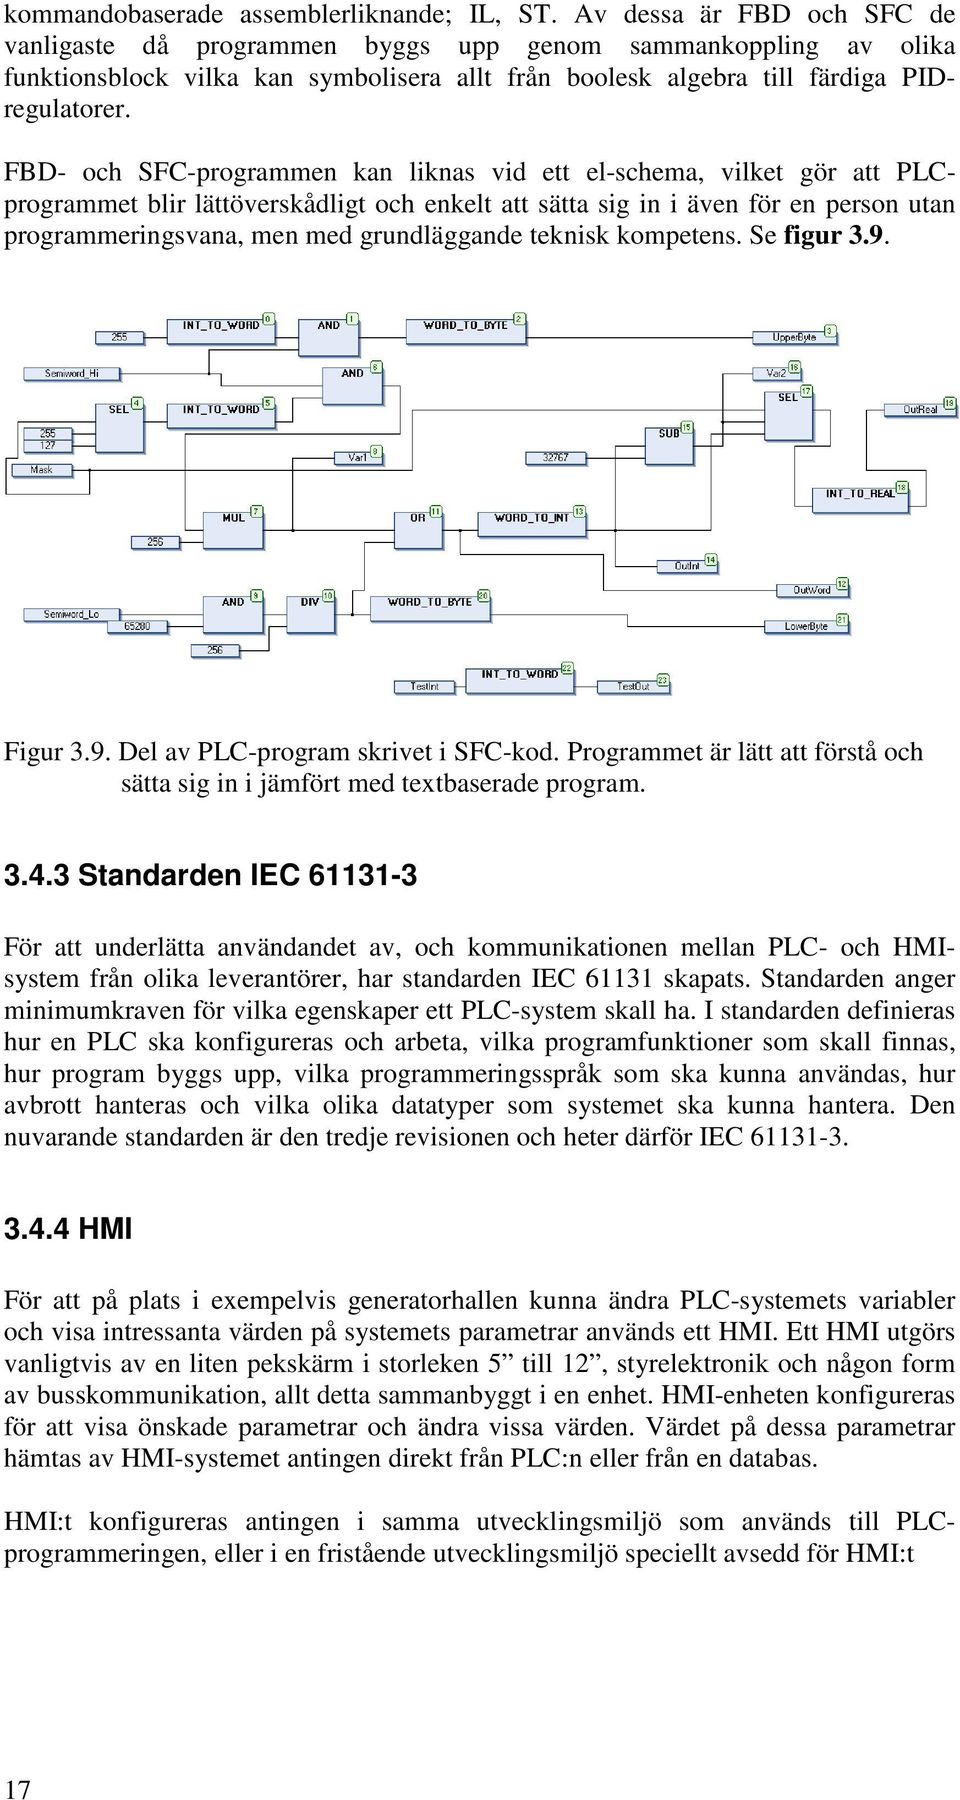 FBD- och SFC-programmen kan liknas vid ett el-schema, vilket gör att PLCprogrammet blir lättöverskådligt och enkelt att sätta sig in i även för en person utan programmeringsvana, men med